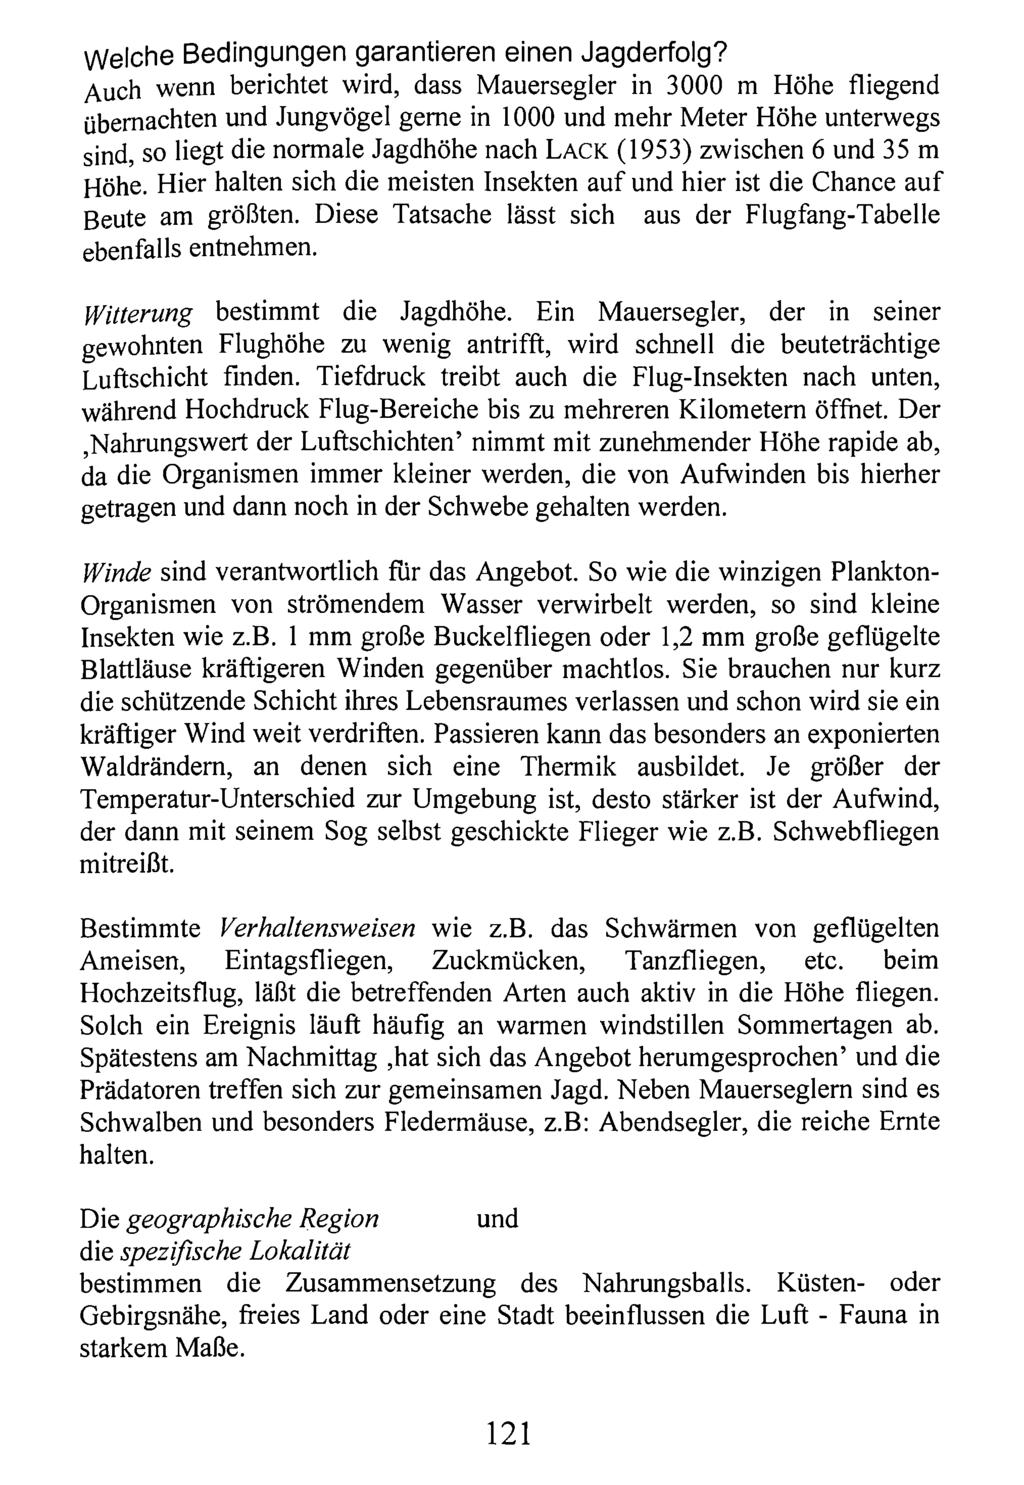 Welche Bedingungen garantieren einen Jagderfolg? Kreis Nürnberger Entomologen; download unter www.biologiezentrum.